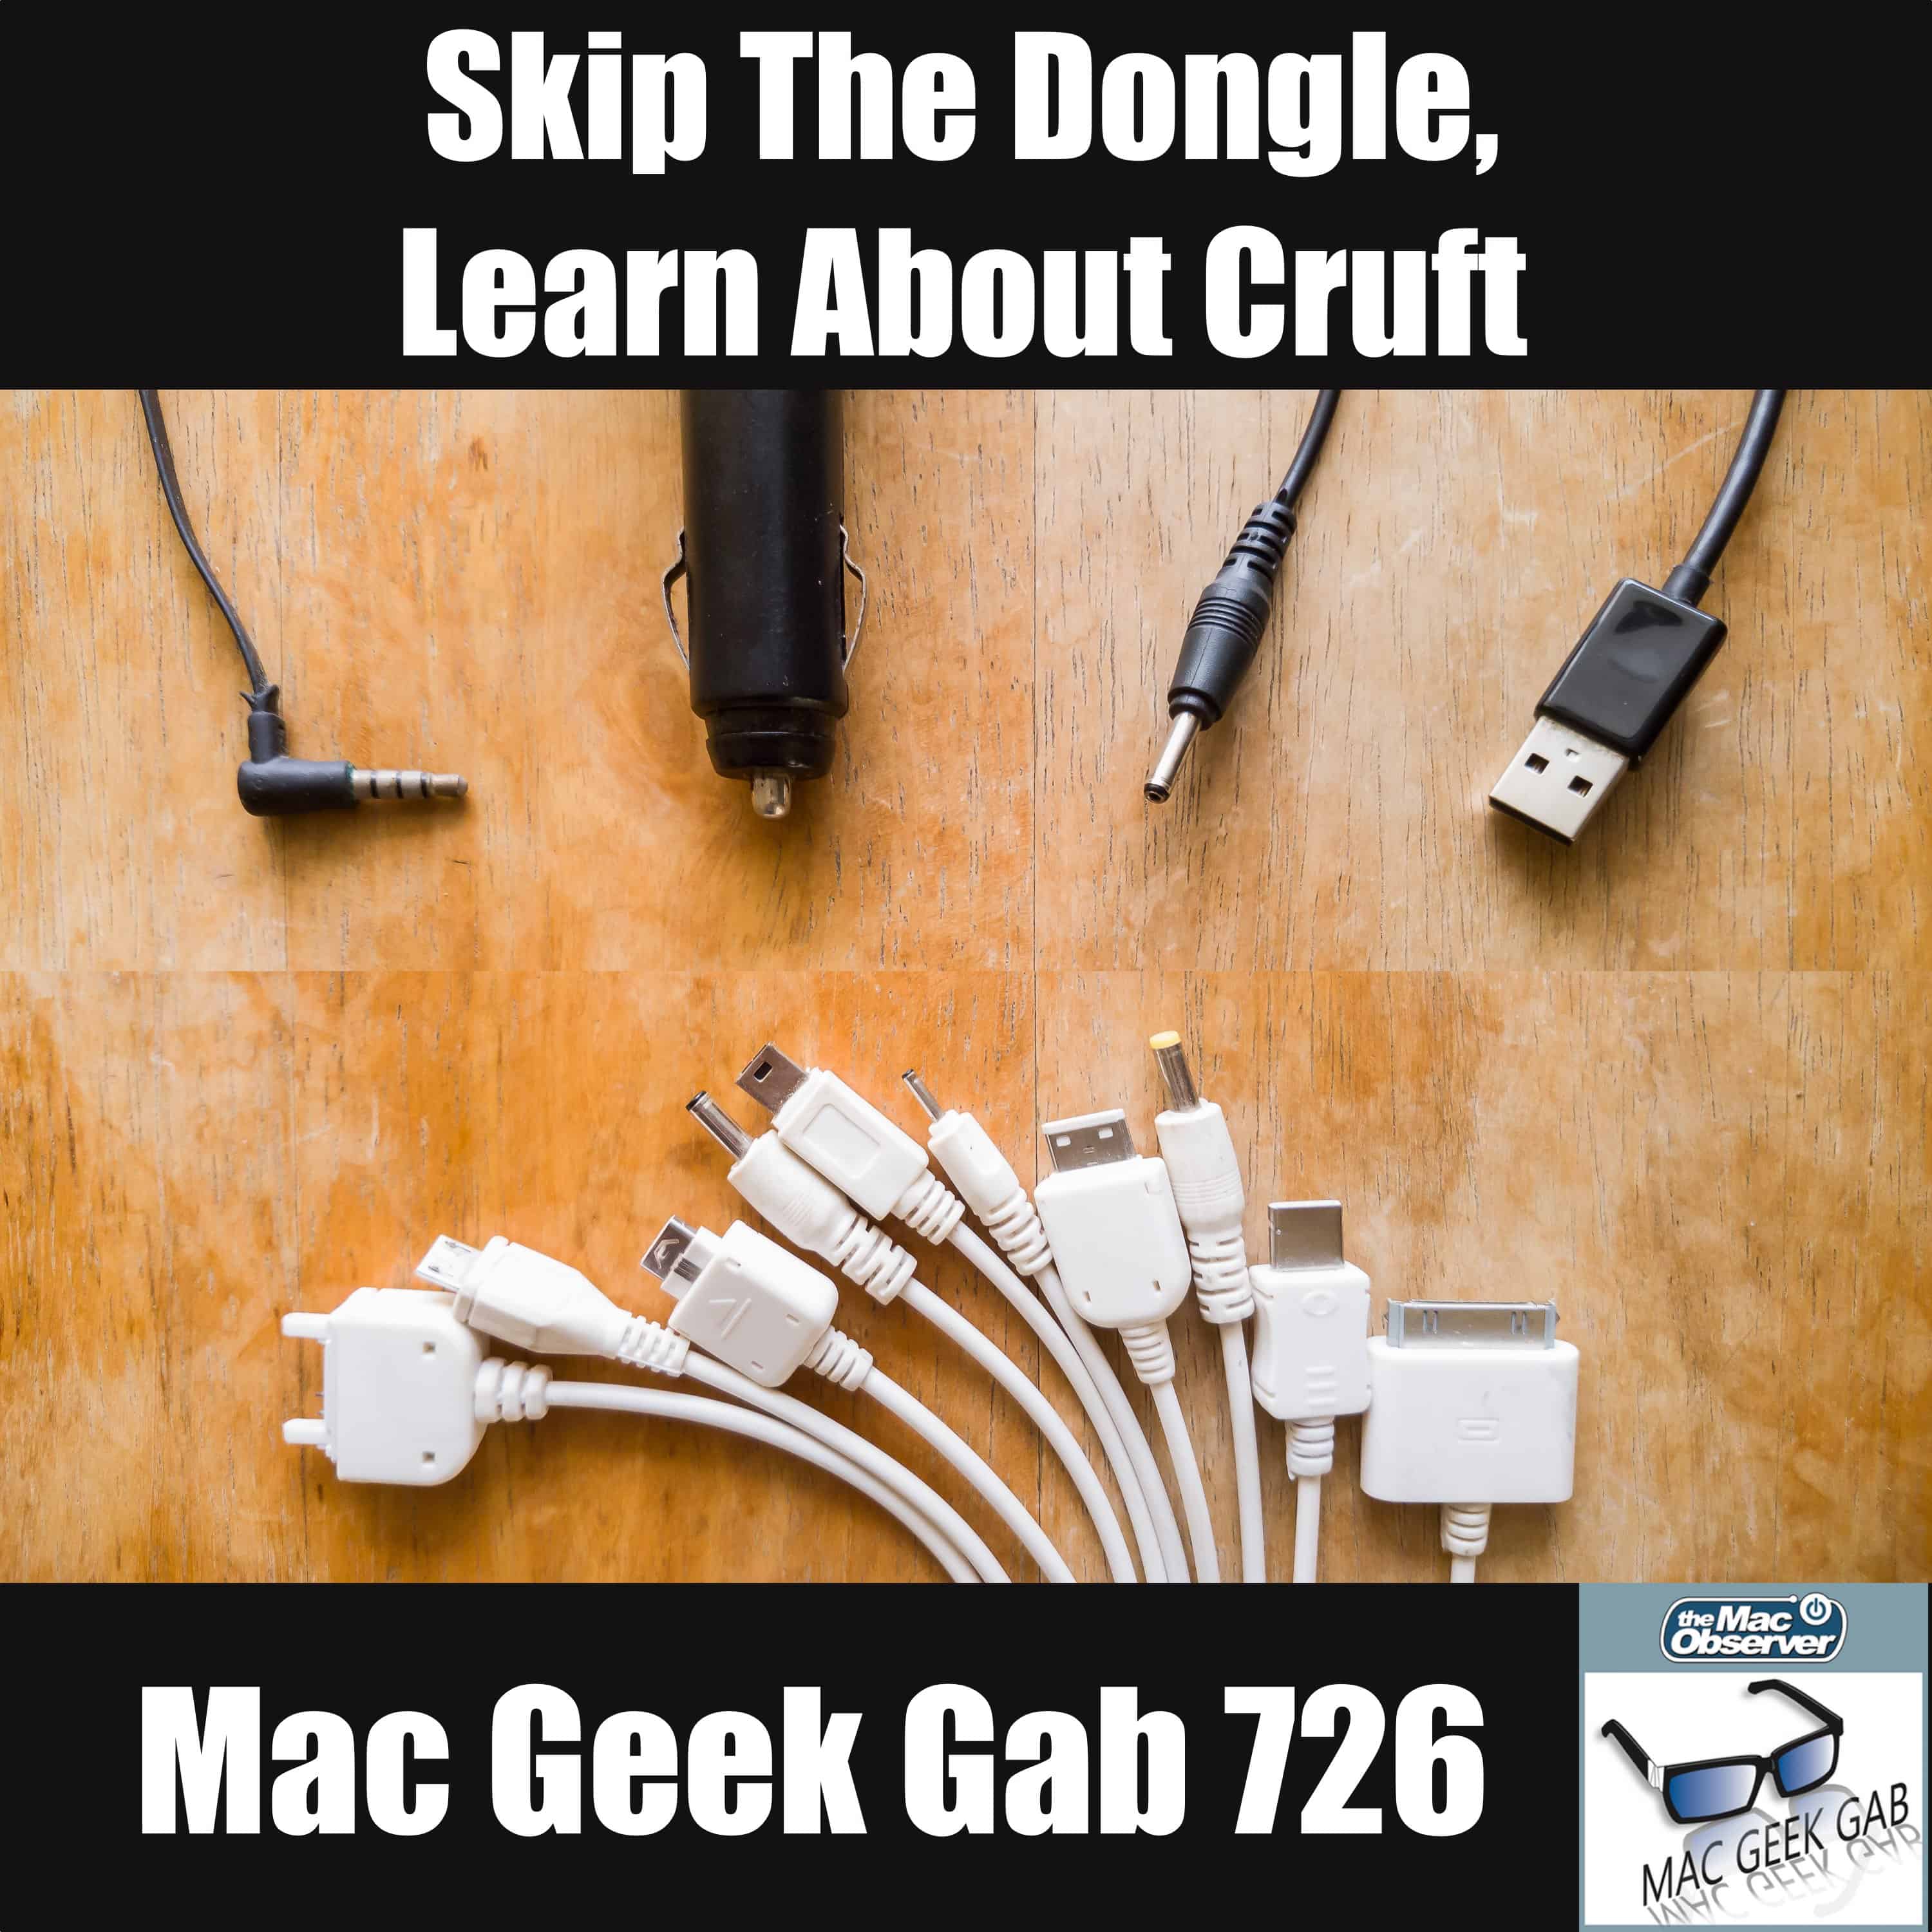 Skip the Dongle, Learn about Cruft! – Mac Geek Gab 726